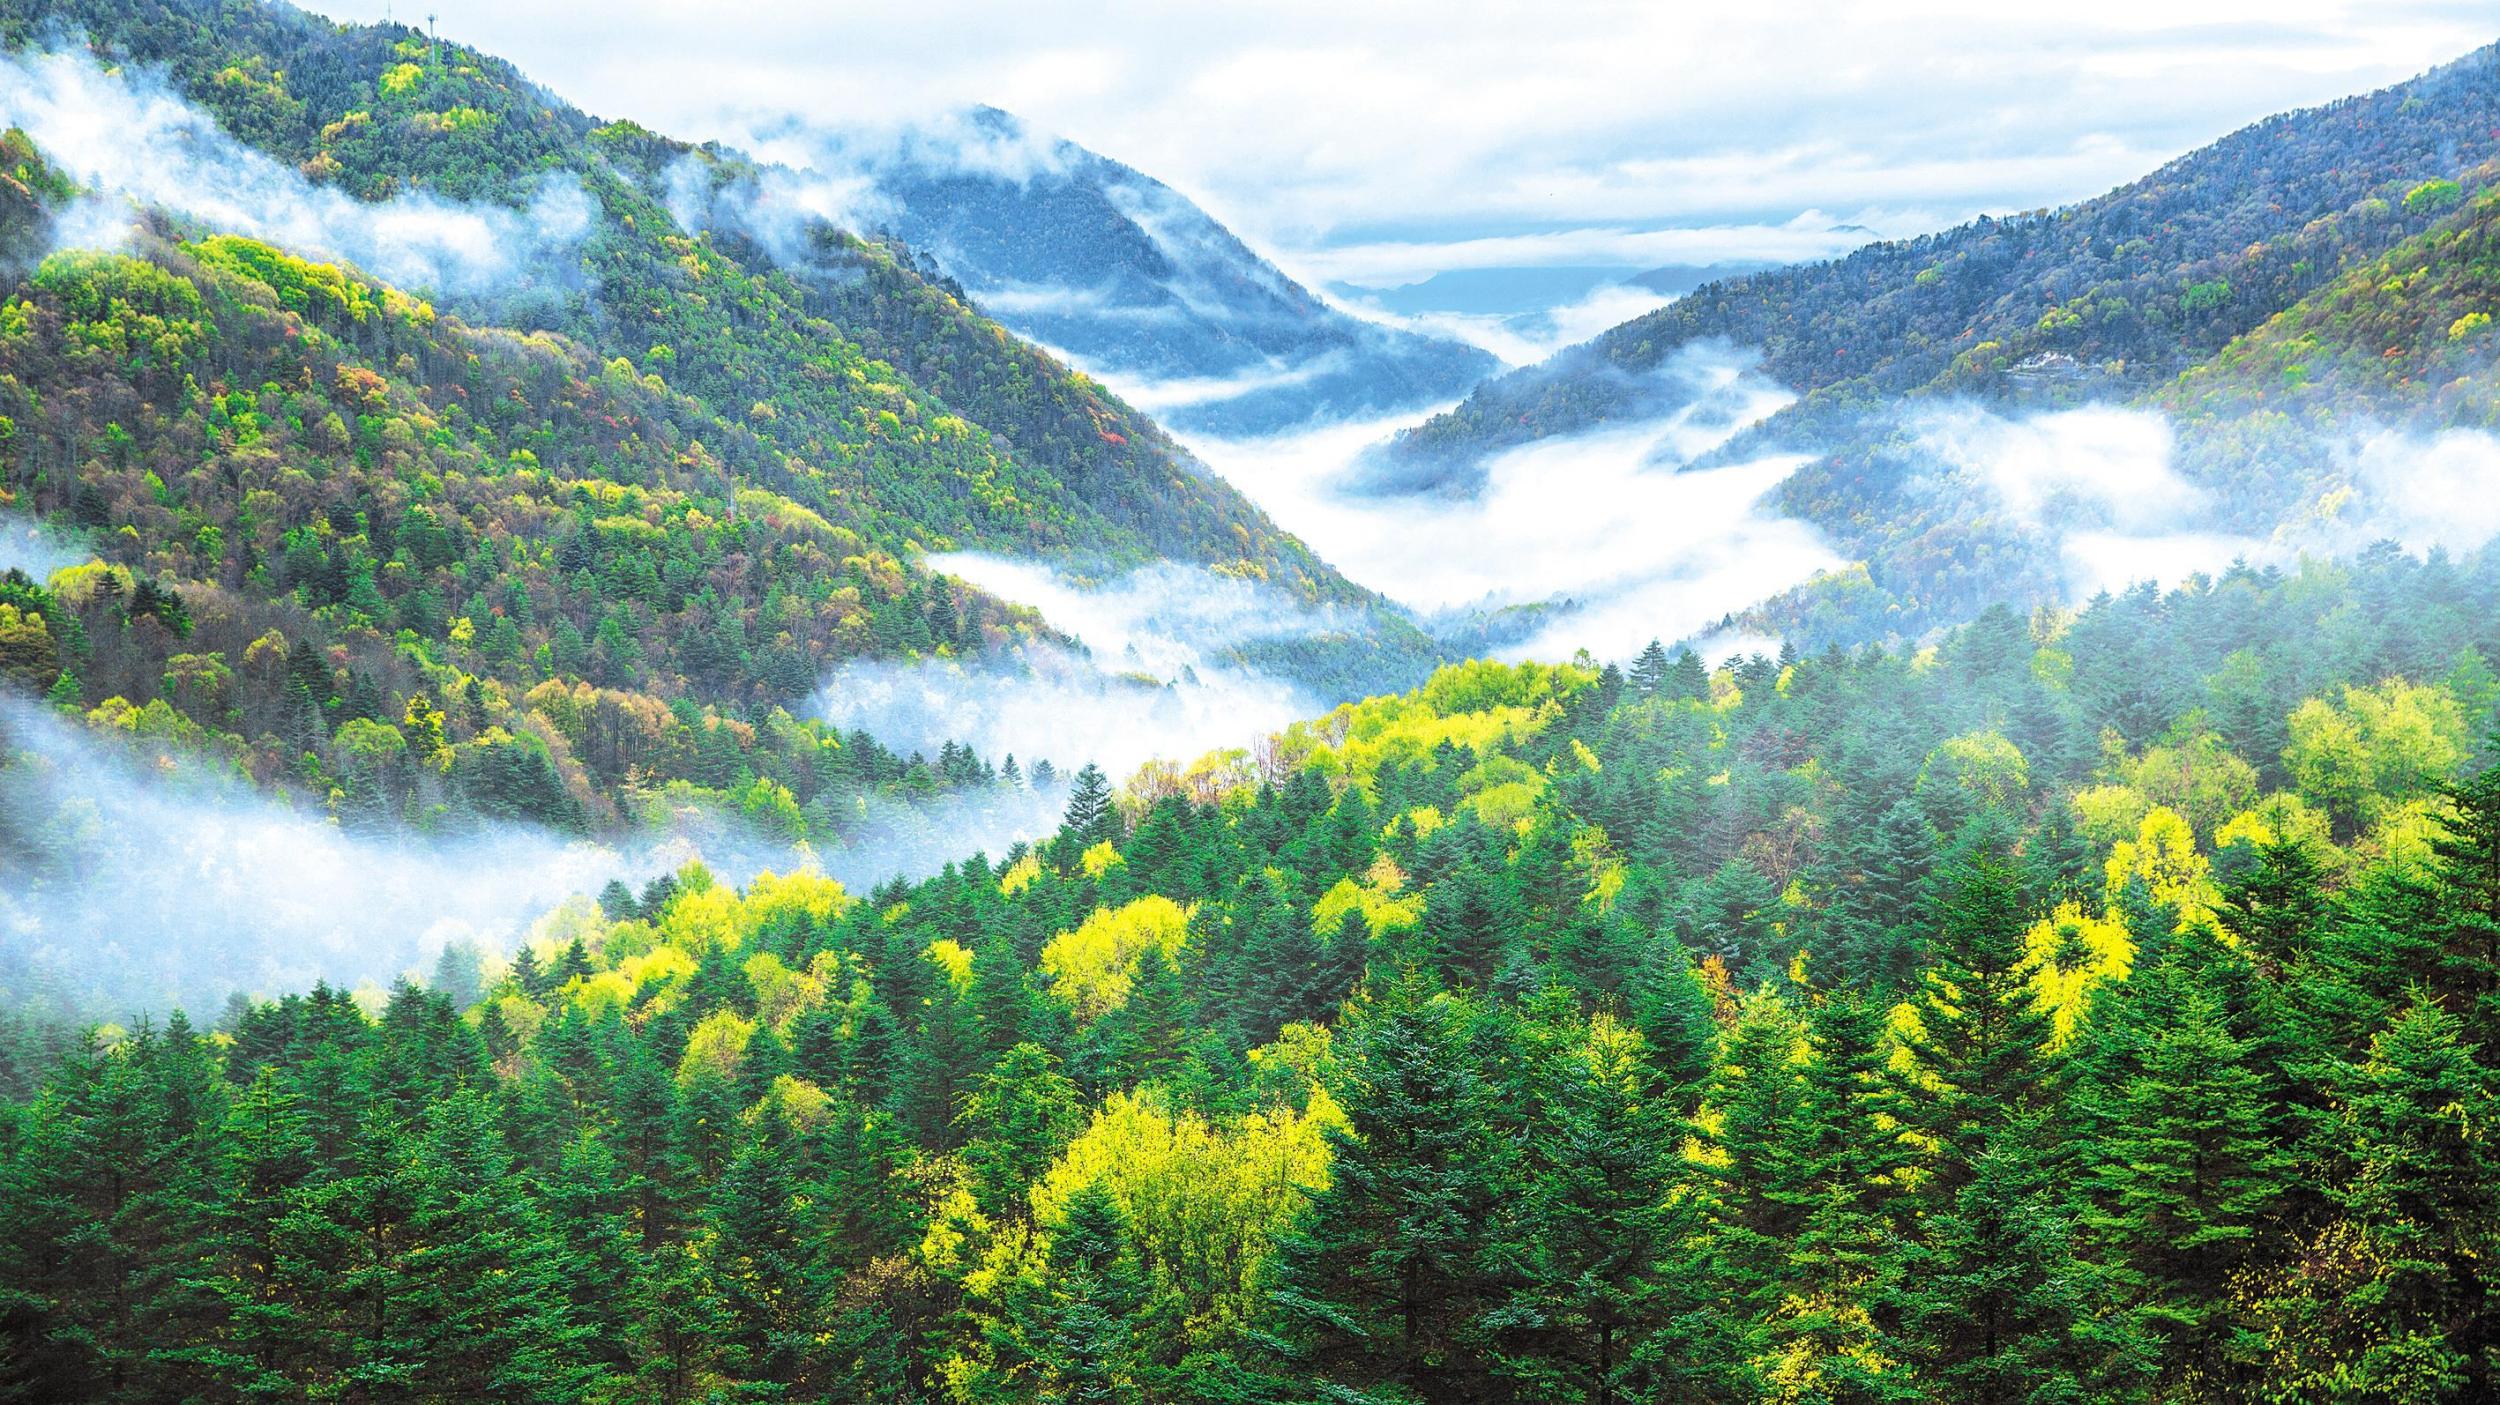 森林覆盖率提升至41.84% 林业总产值突破4000亿元 绿满荆楚